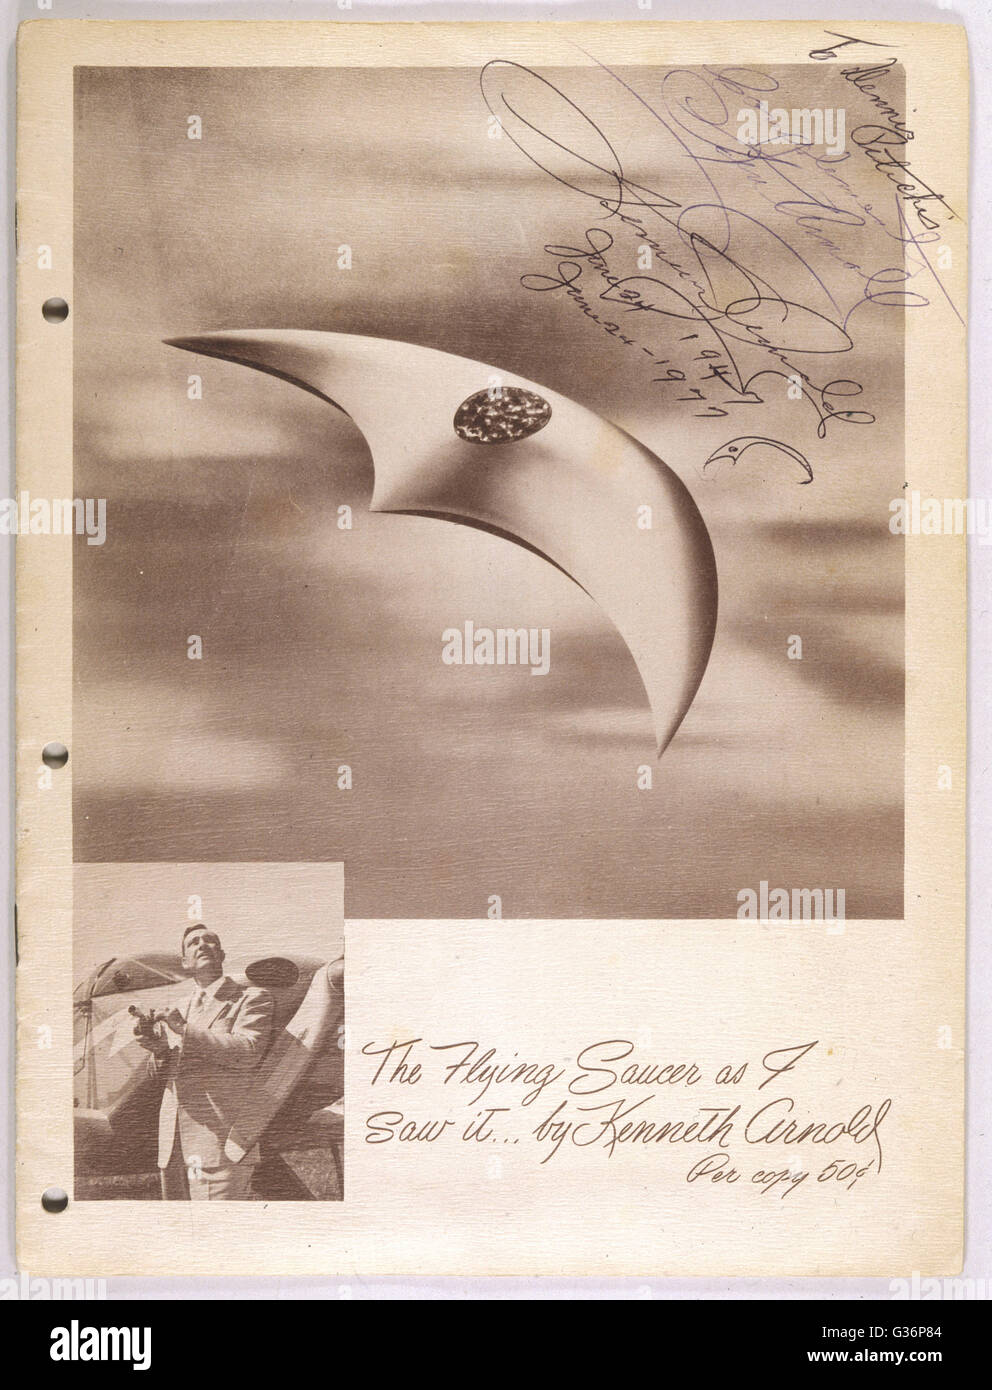 El platillo volante como lo ví, por Kenneth Arnold, que contiene su propia cuenta. Este ejemplar está firmado por el autor. Fecha: 1950 Foto de stock